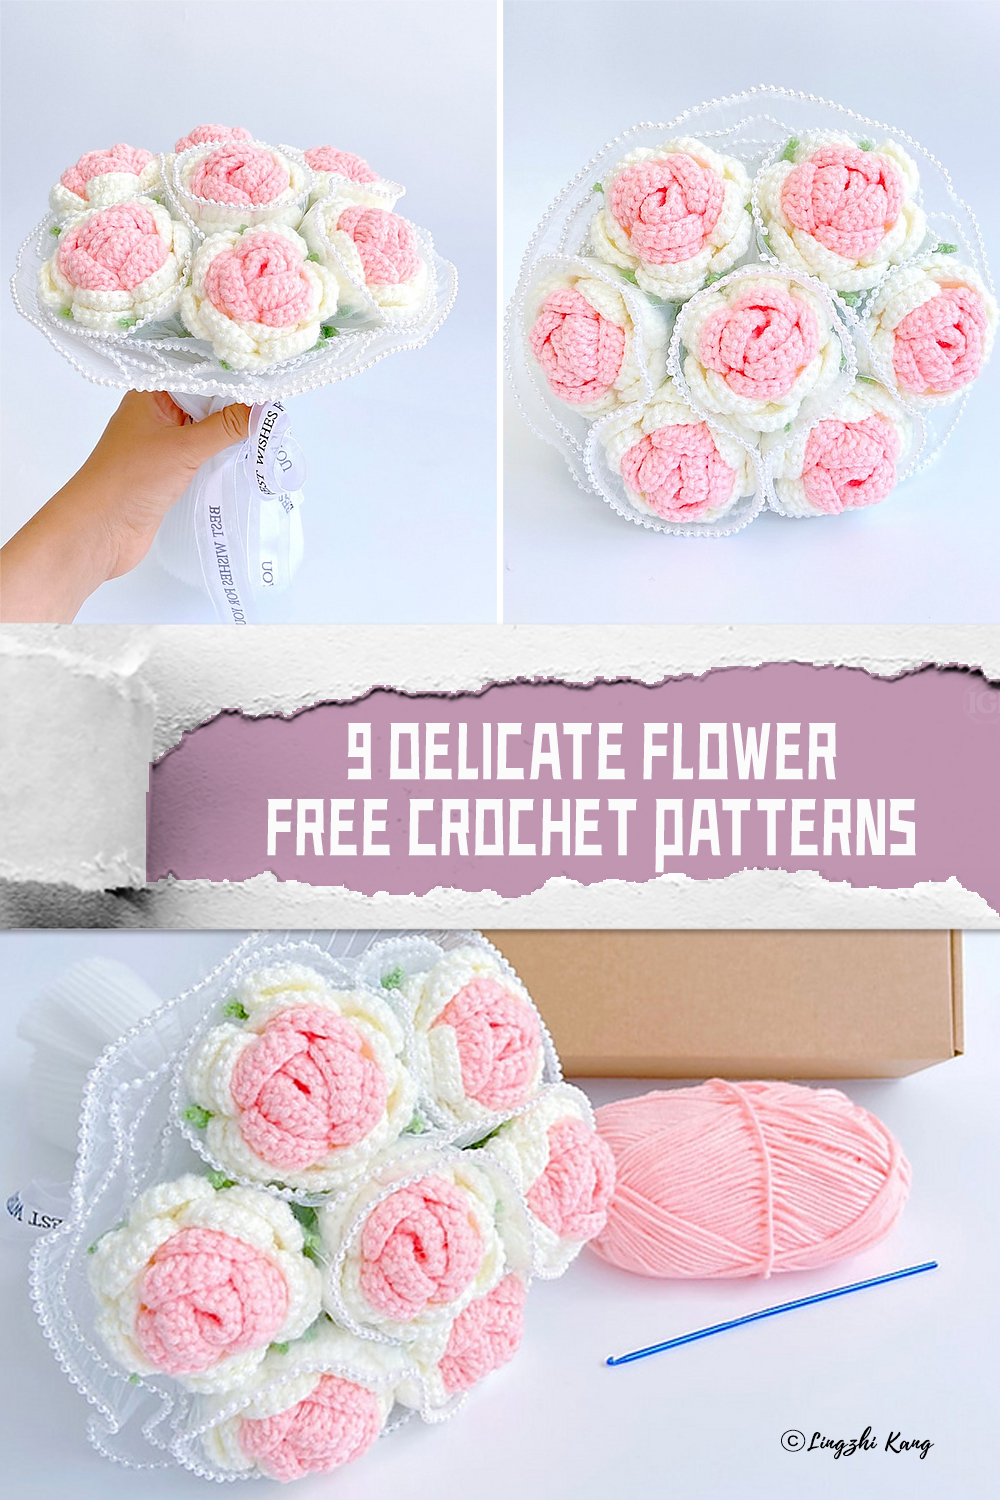 9 Delicate Flower FREE Crochet Patterns